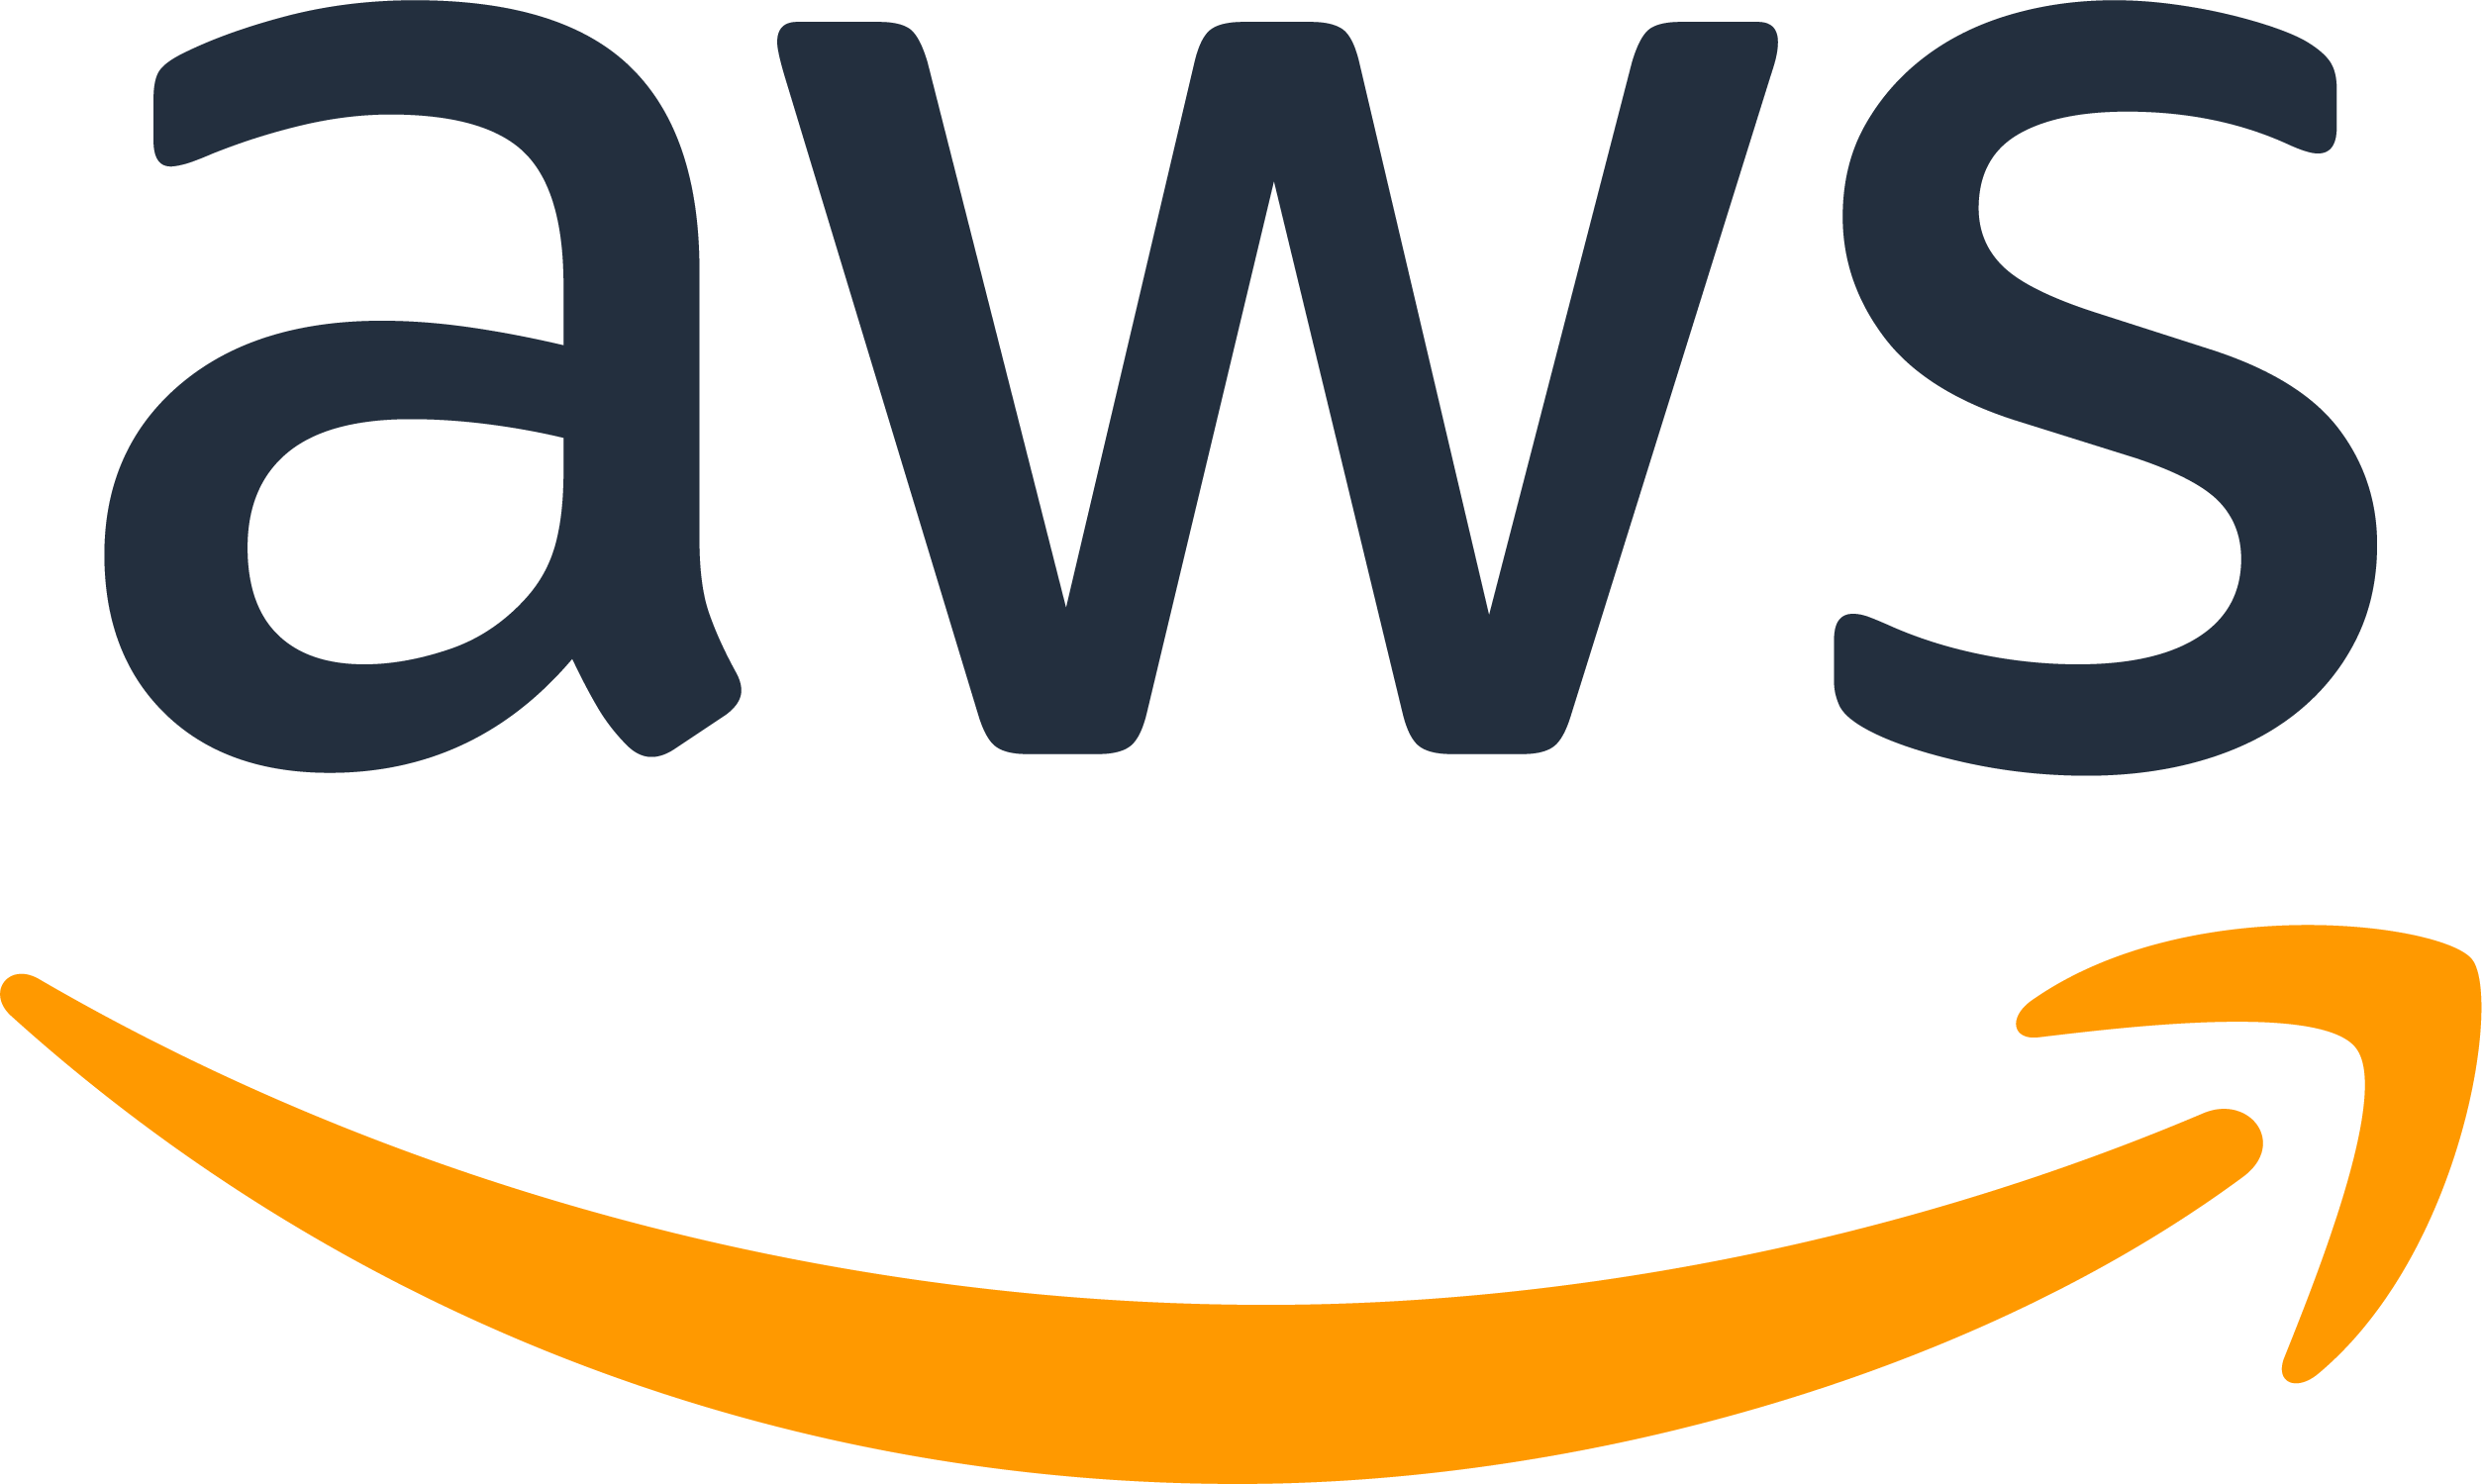 AWS_logo_RGB